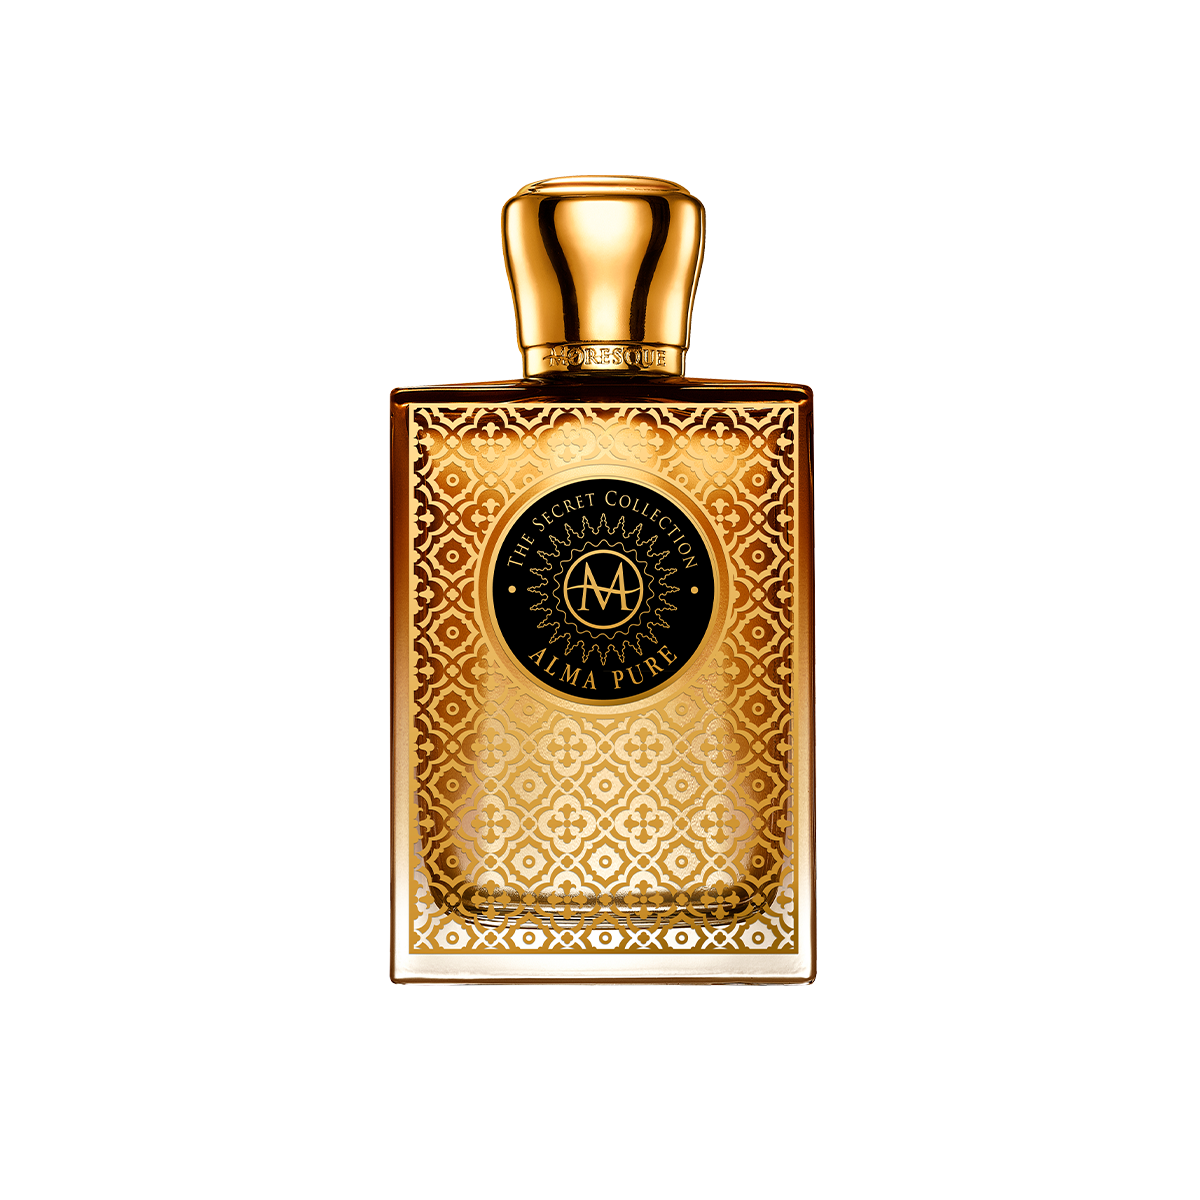 Secret Collection / Alma Pure <br> Eau de Parfum 75ml